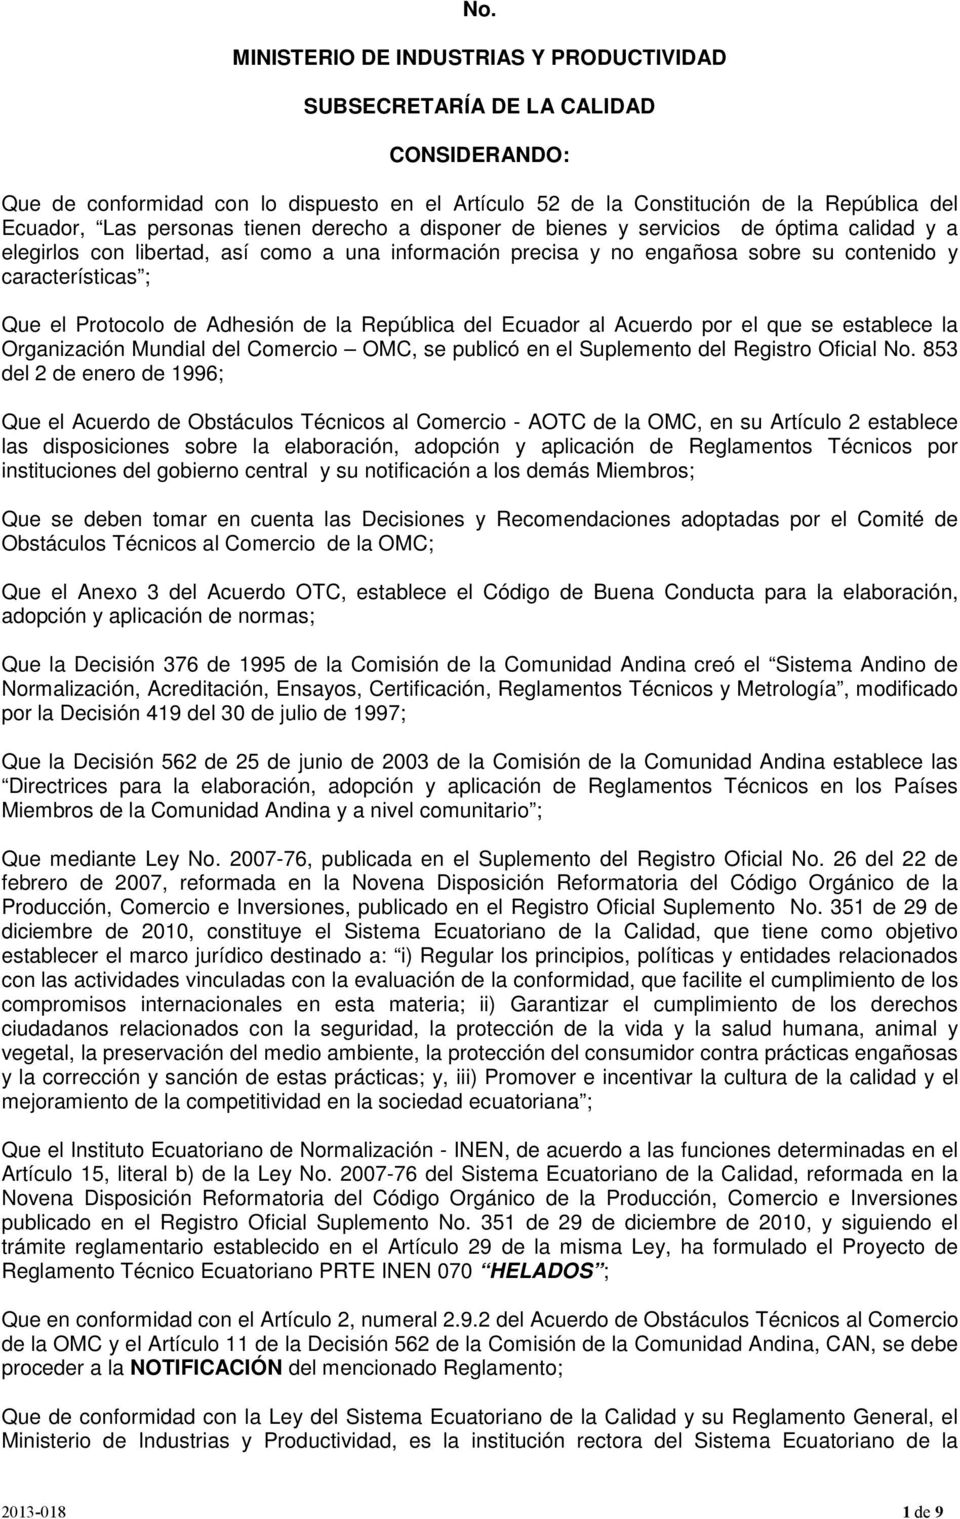 Protocolo de Adhesión de la República del Ecuador al Acuerdo por el que se establece la Organización Mundial del Comercio OMC, se publicó en el Suplemento del Registro Oficial No.